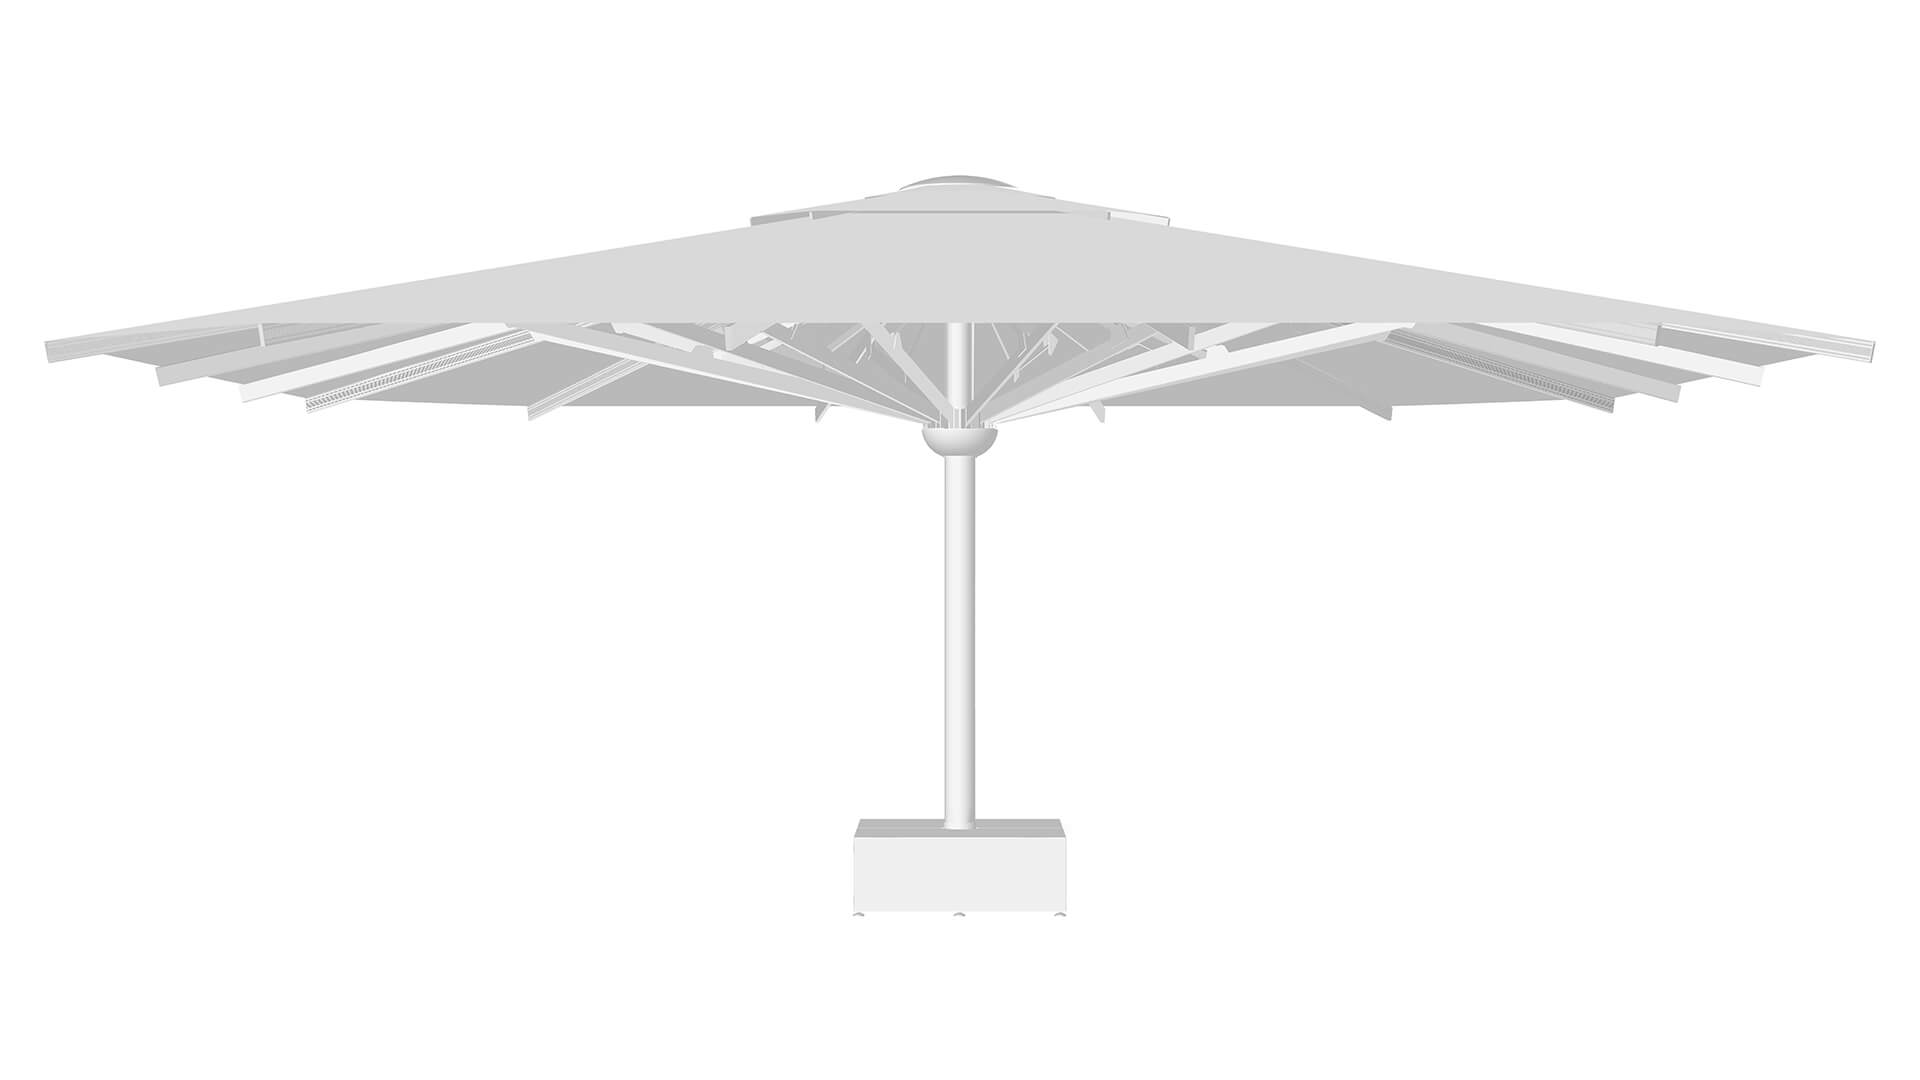 Giant Central pole Umbrella by Gaggio